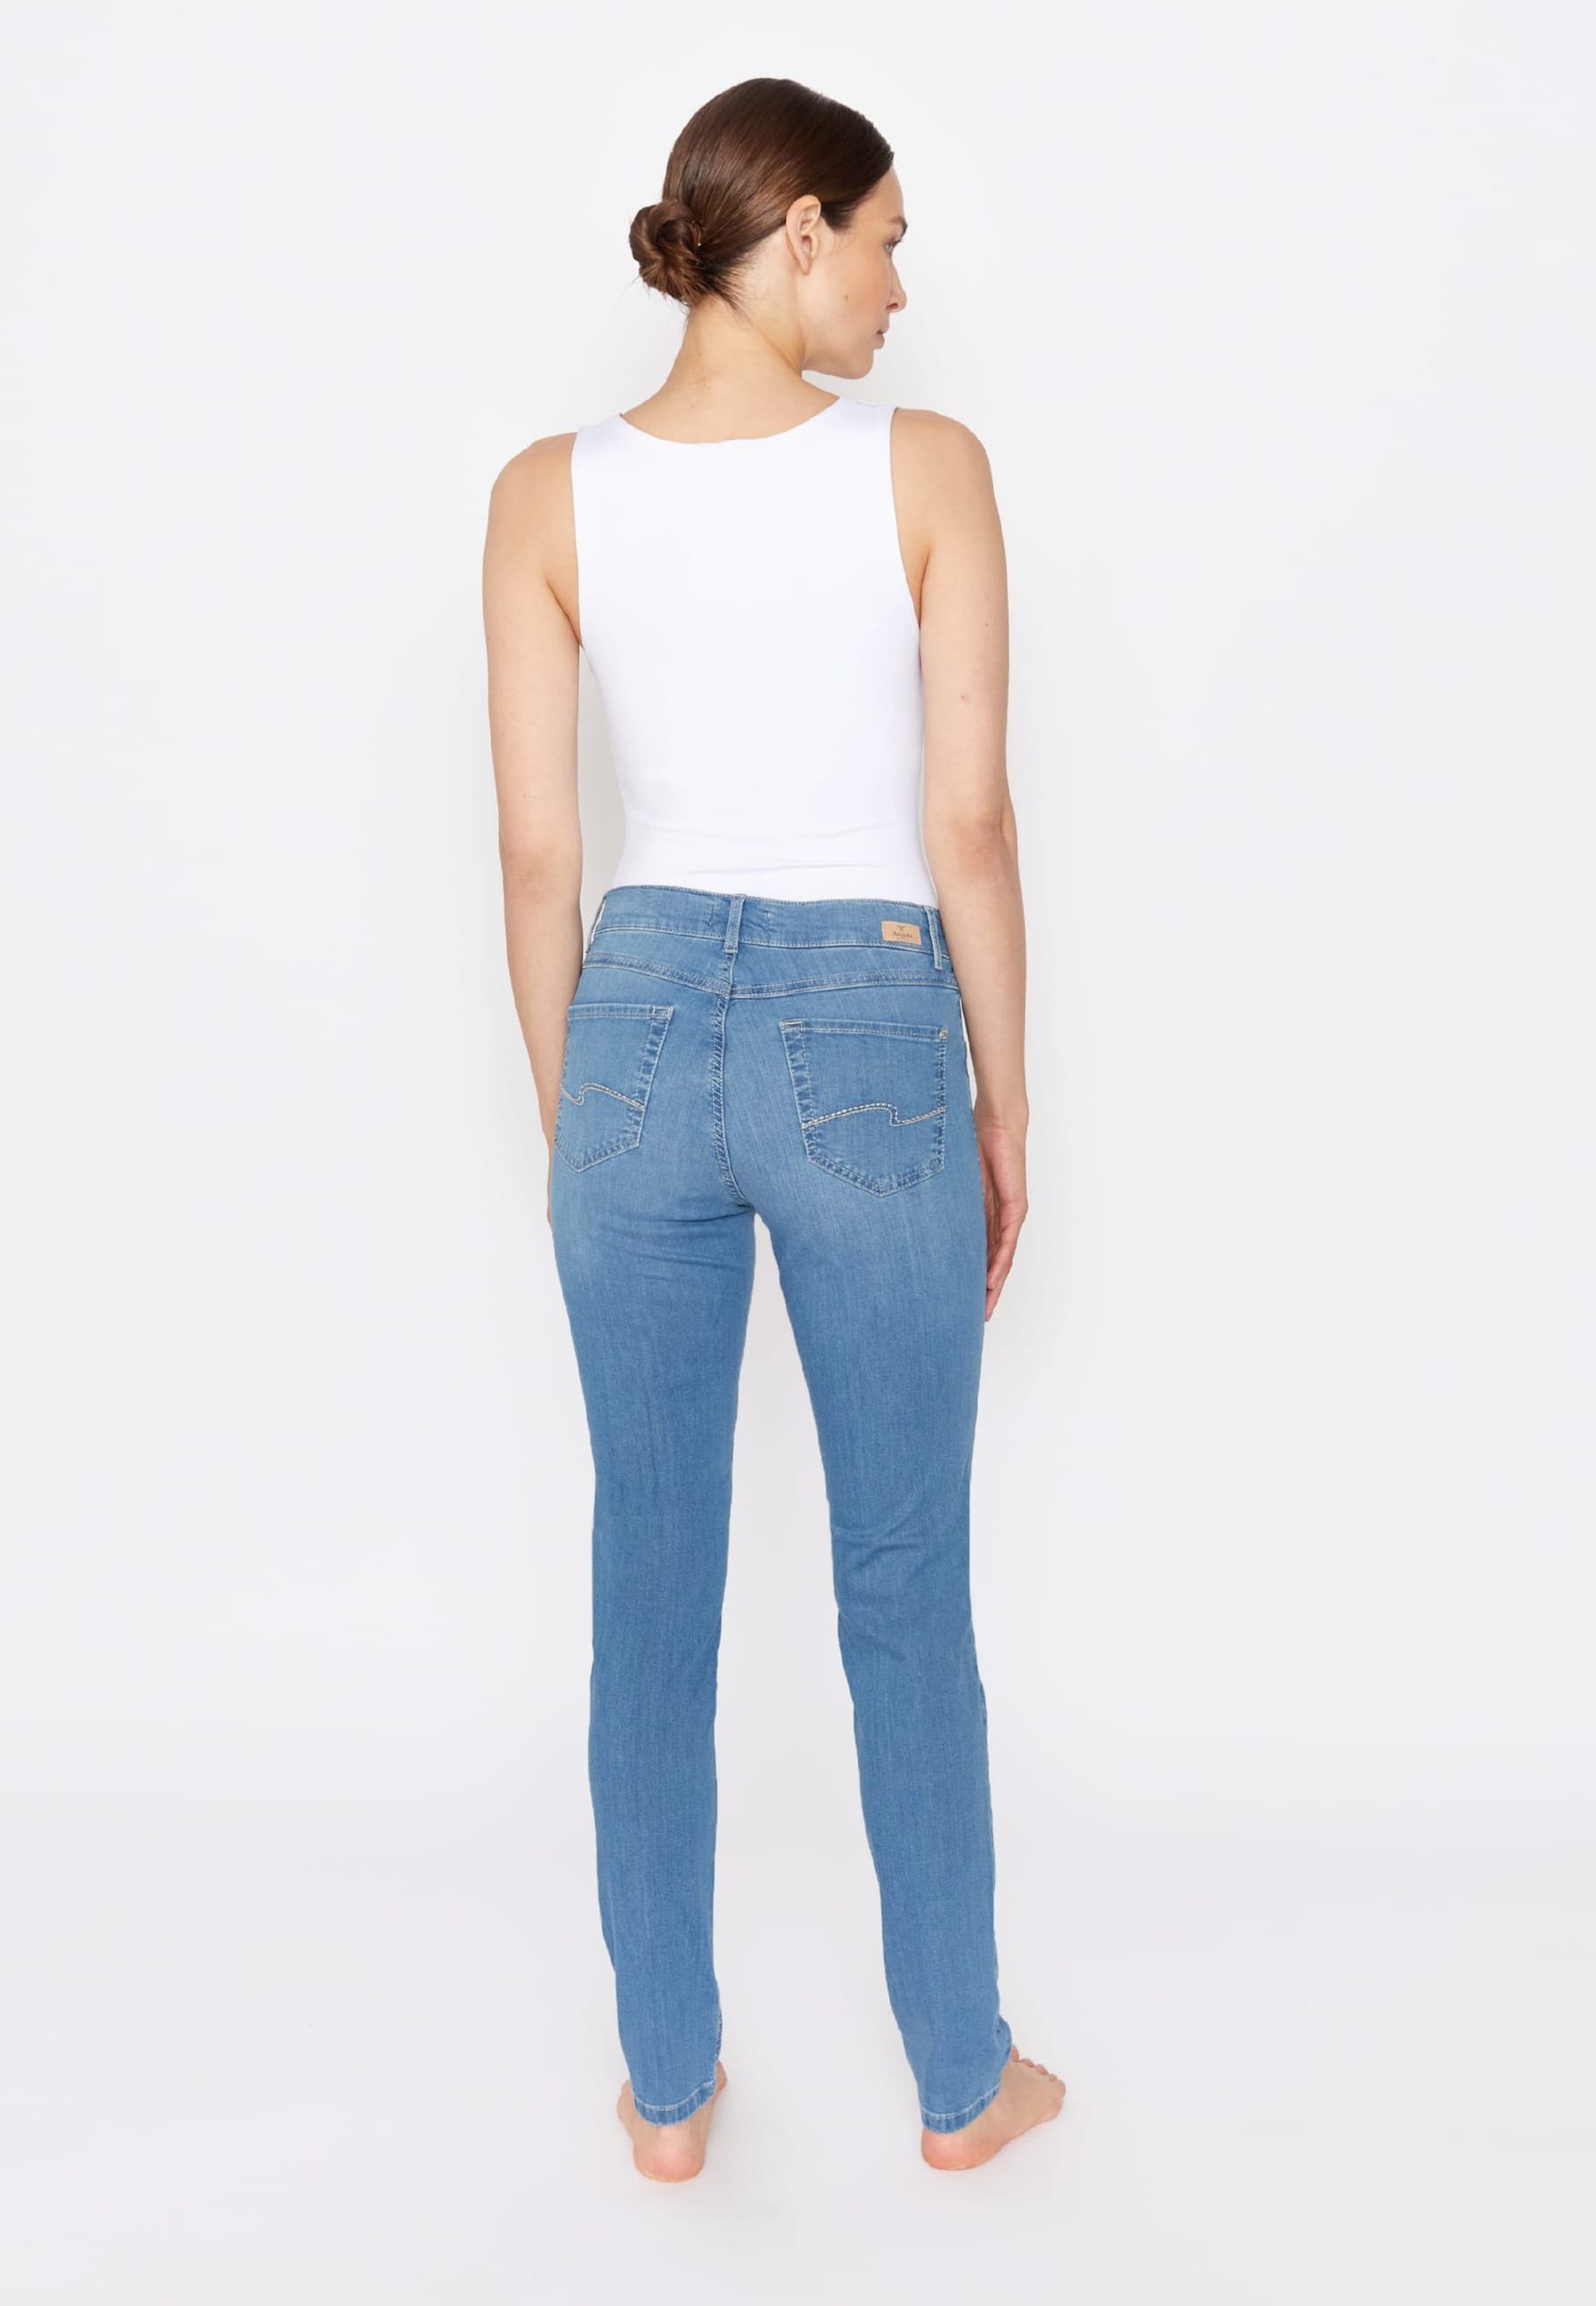 ANGELS Slim-fit-Jeans Jeans mit Cotton mit Label-Applikationen hellblau Skinny Organic